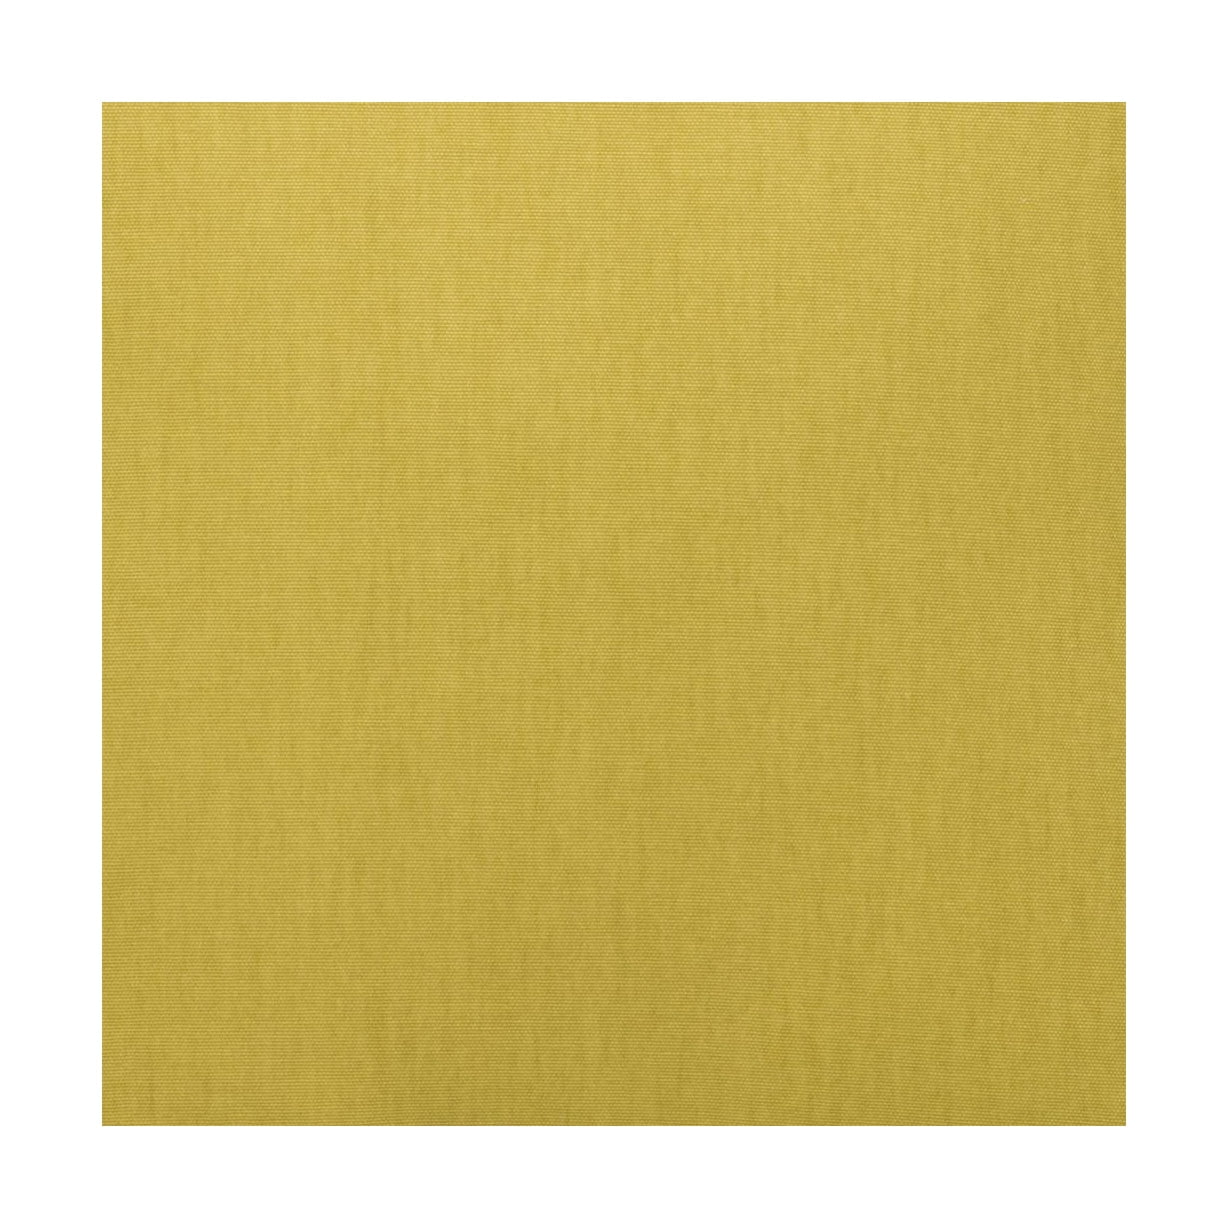 Spira Klotz šířka tkaniny 150 cm (cena za metr), žlutá